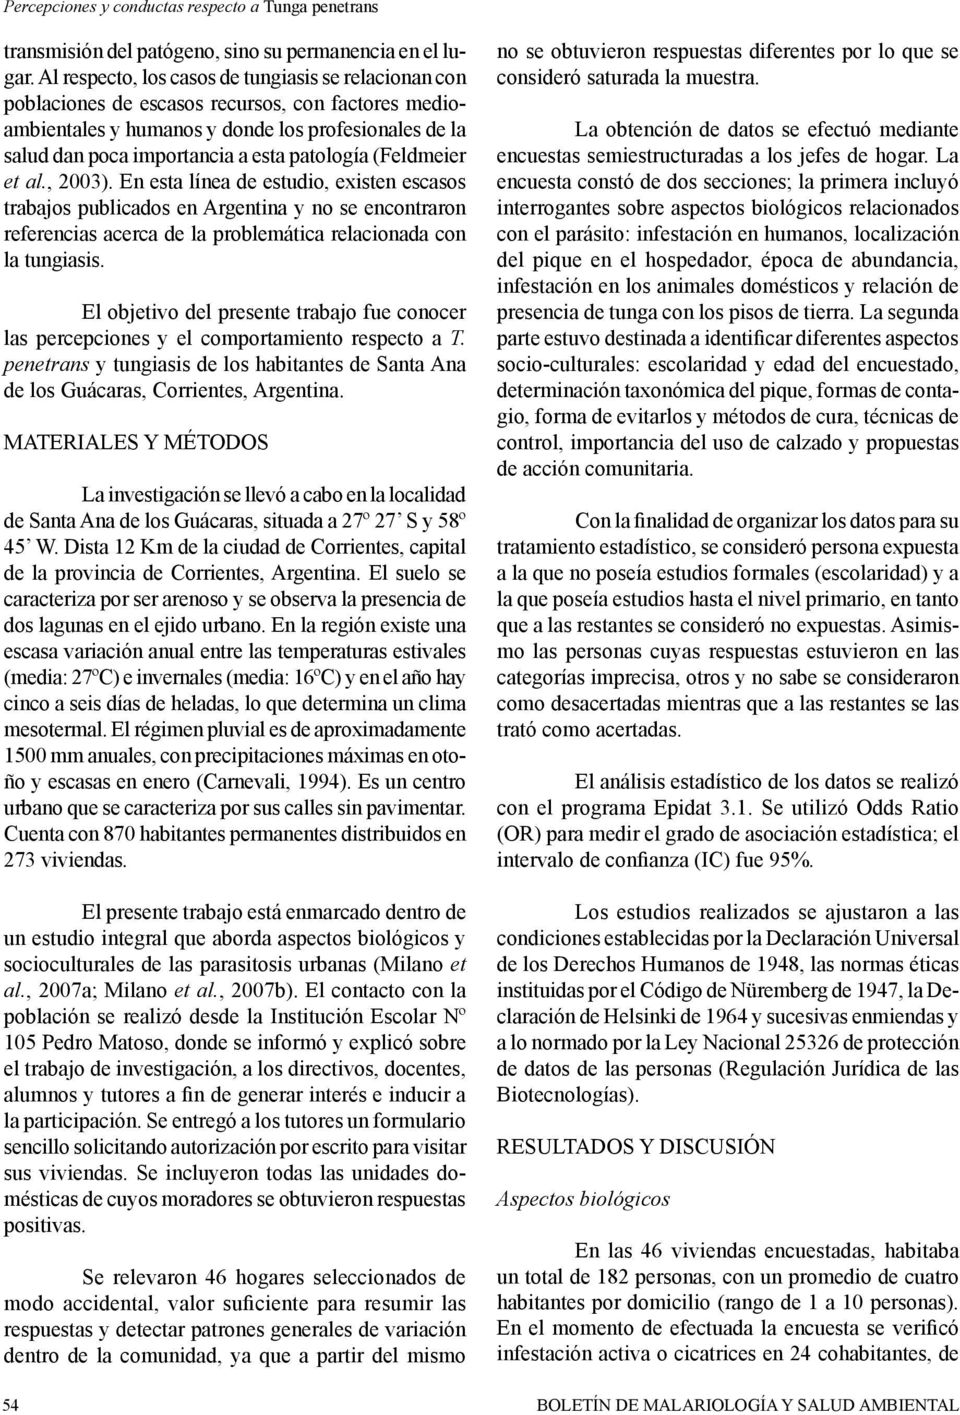 patología (Feldmeier et al., 2003). En esta línea de estudio, existen escasos trabajos publicados en Argentina y no se encontraron referencias acerca de la problemática relacionada con la tungiasis.